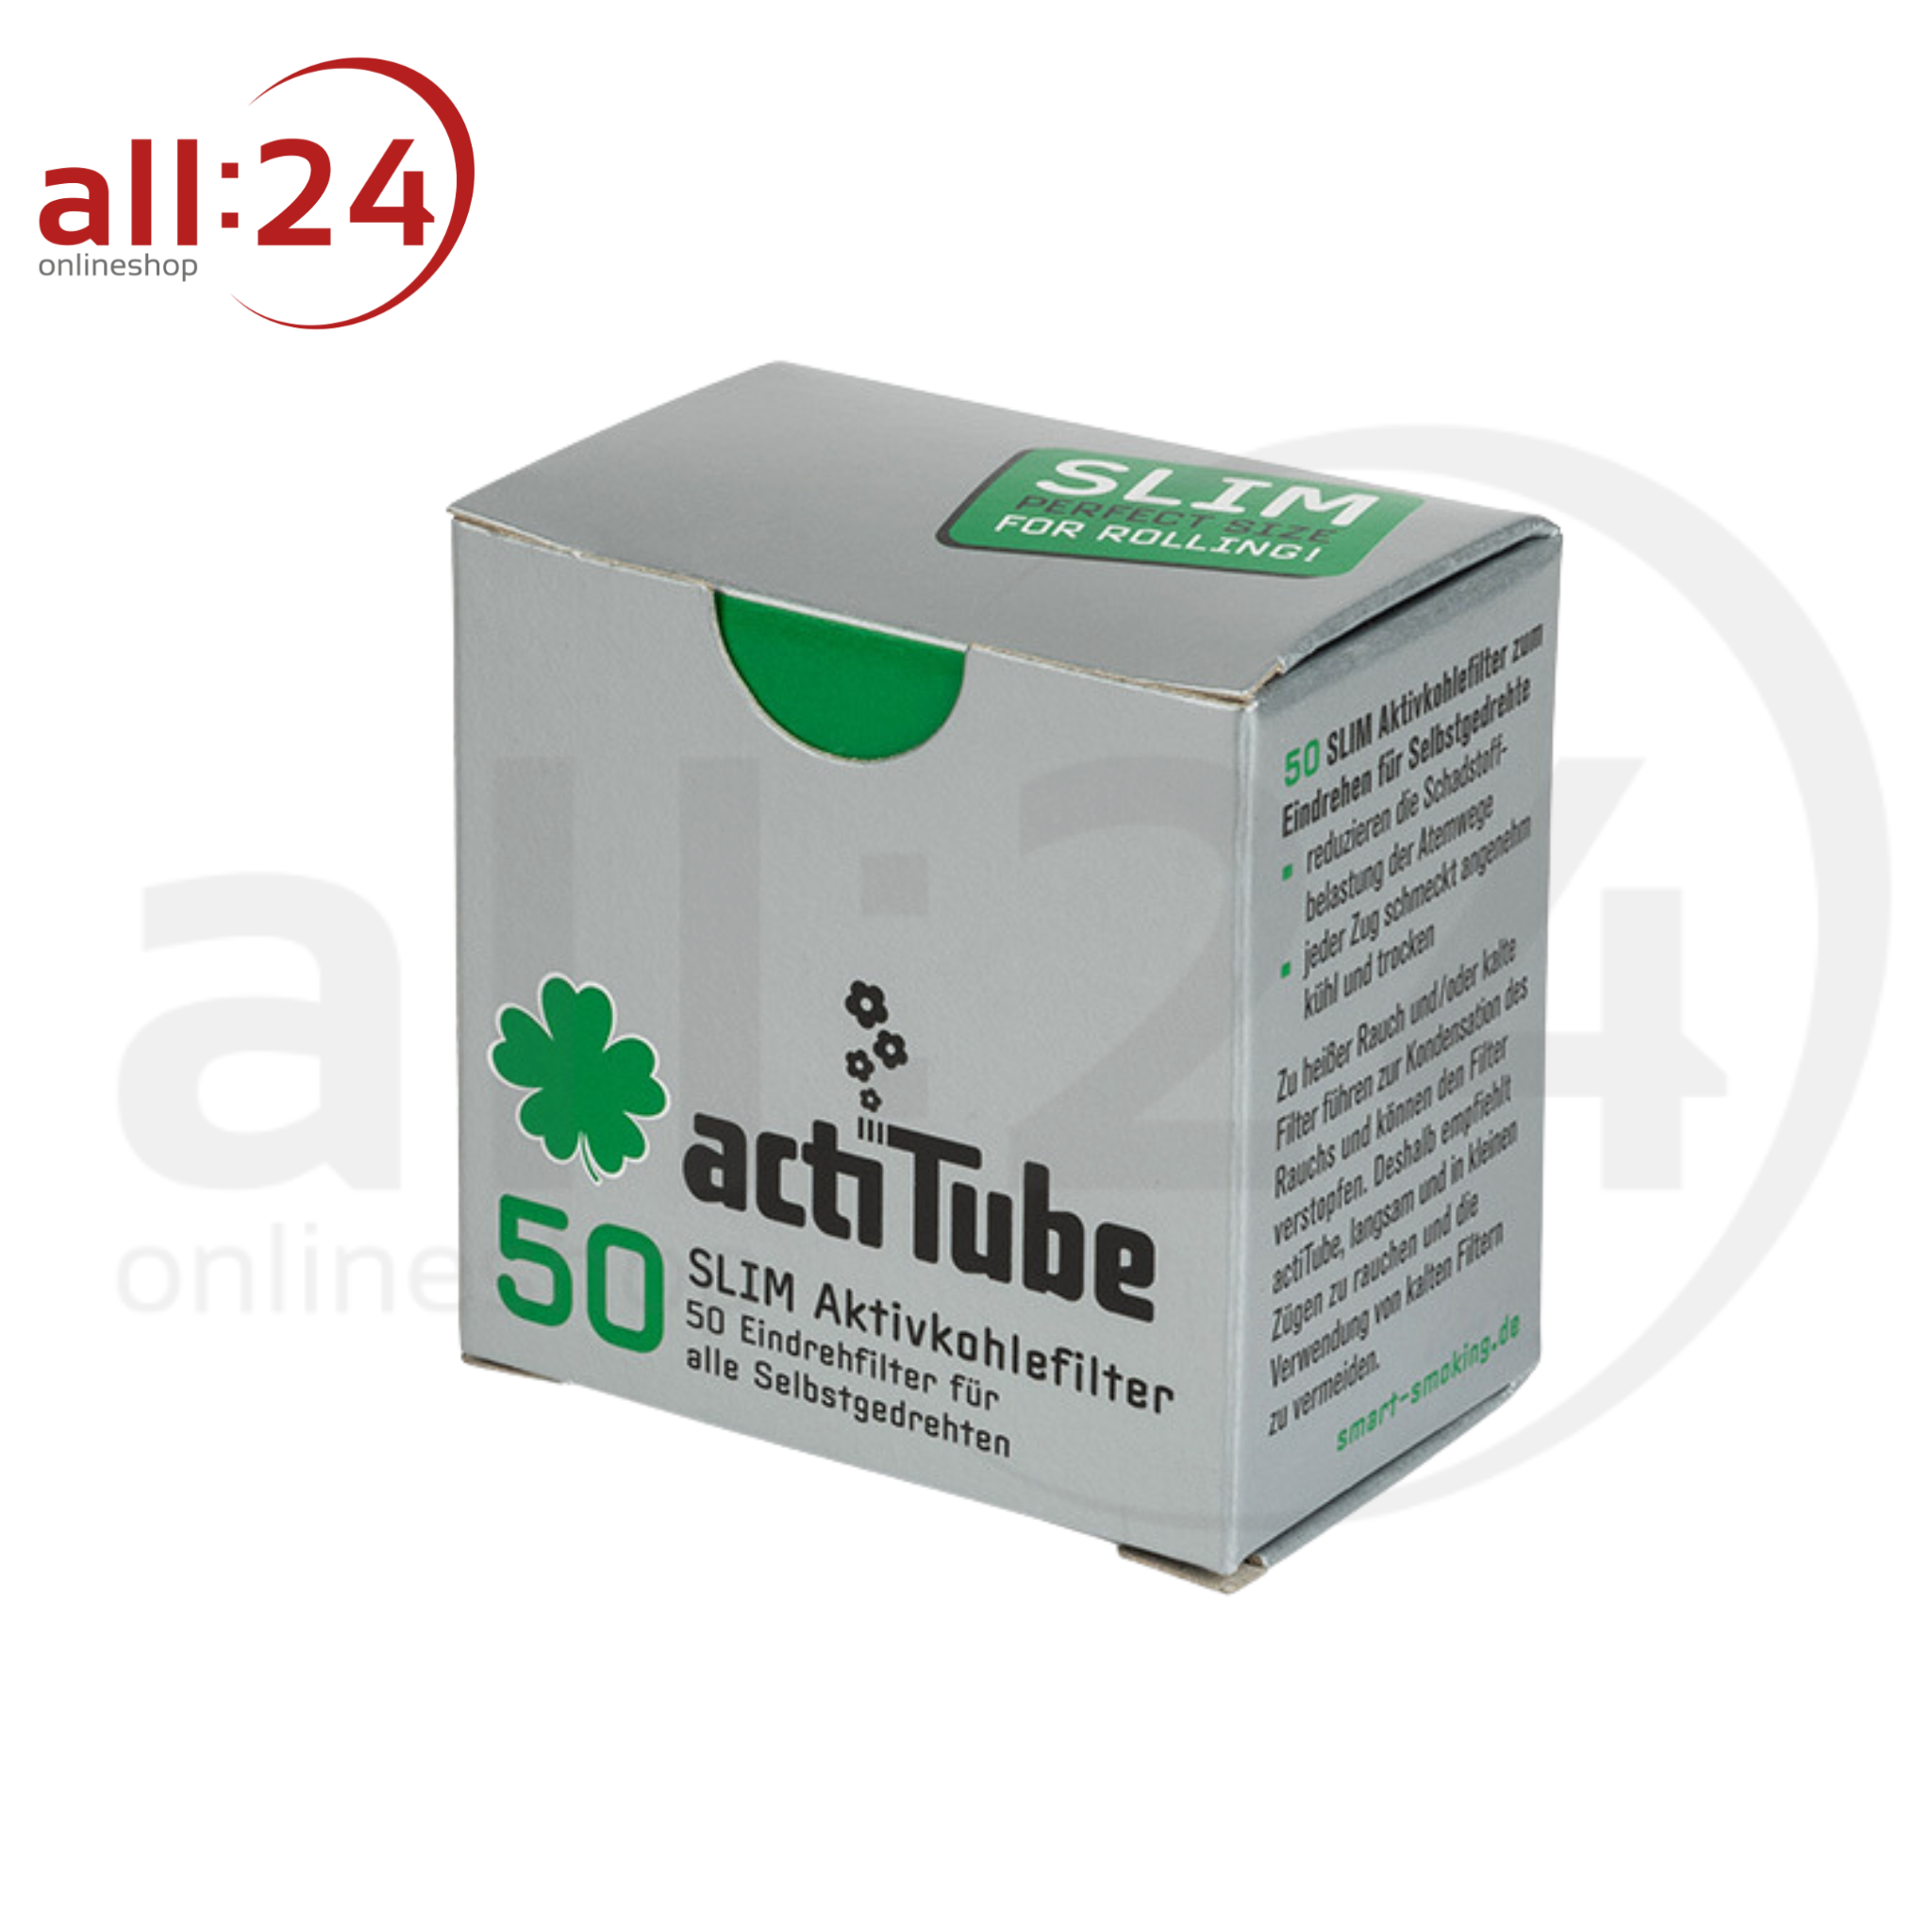 ACTITUBE Aktivkohlefilter 7mm - Karton mit 10 Boxen á 50 Stück 